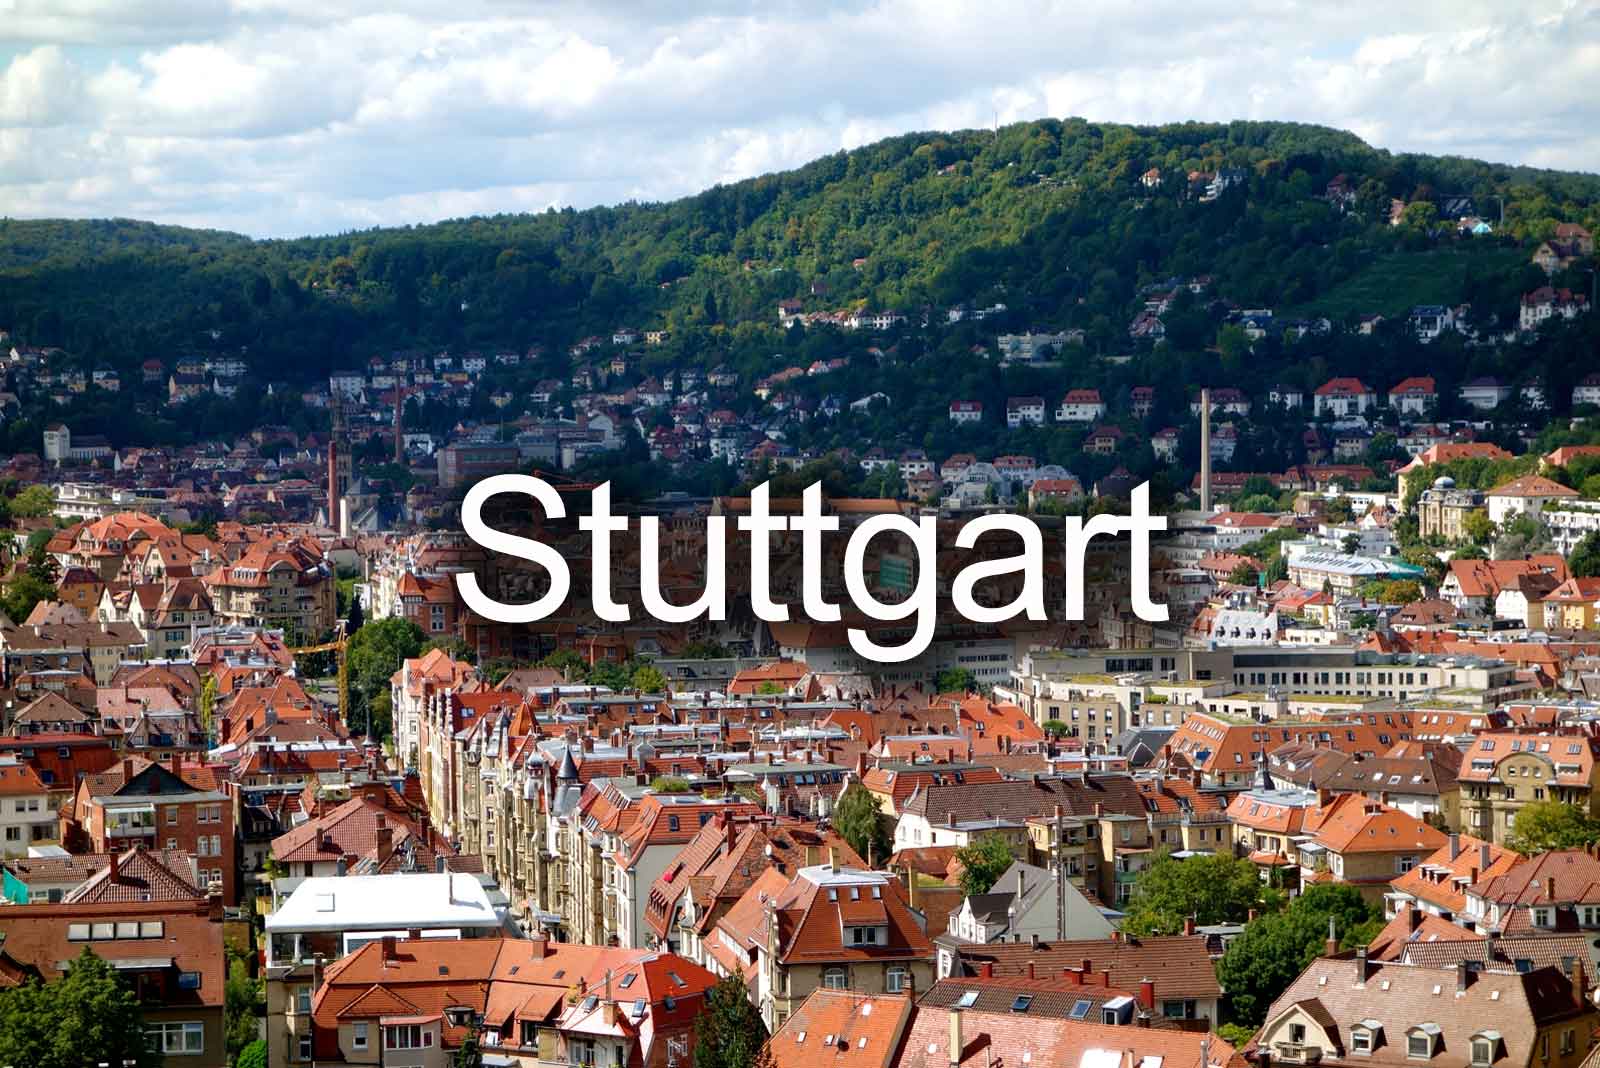 Tiefgaragenreinigung Stuttgart